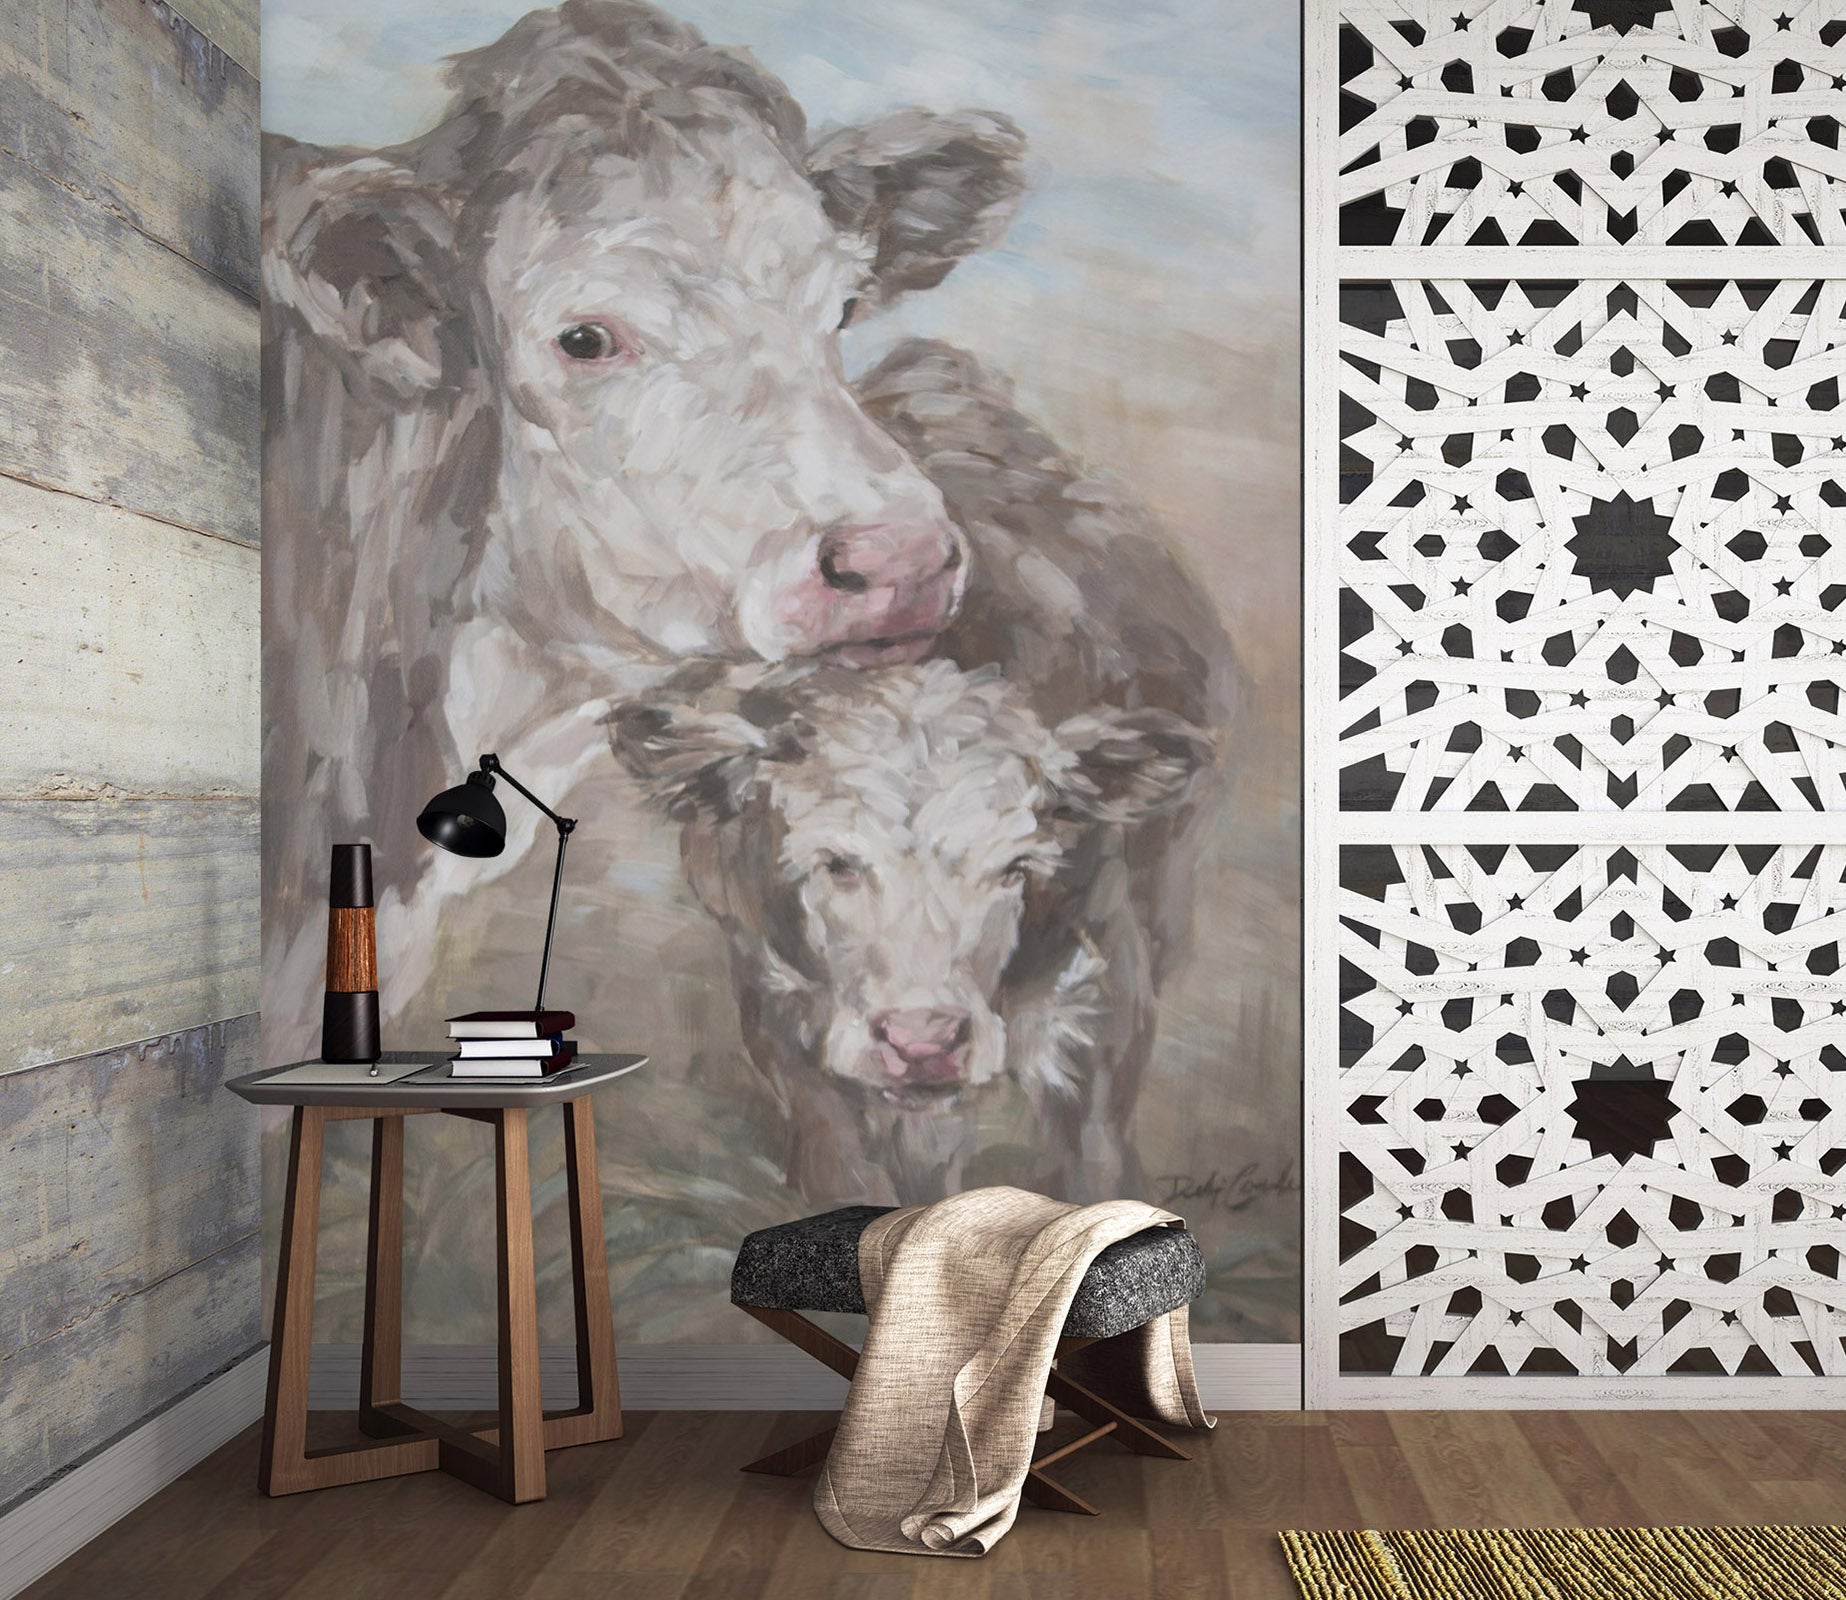 3D Cattle 3138 Debi Coules Wall Mural Wall Murals